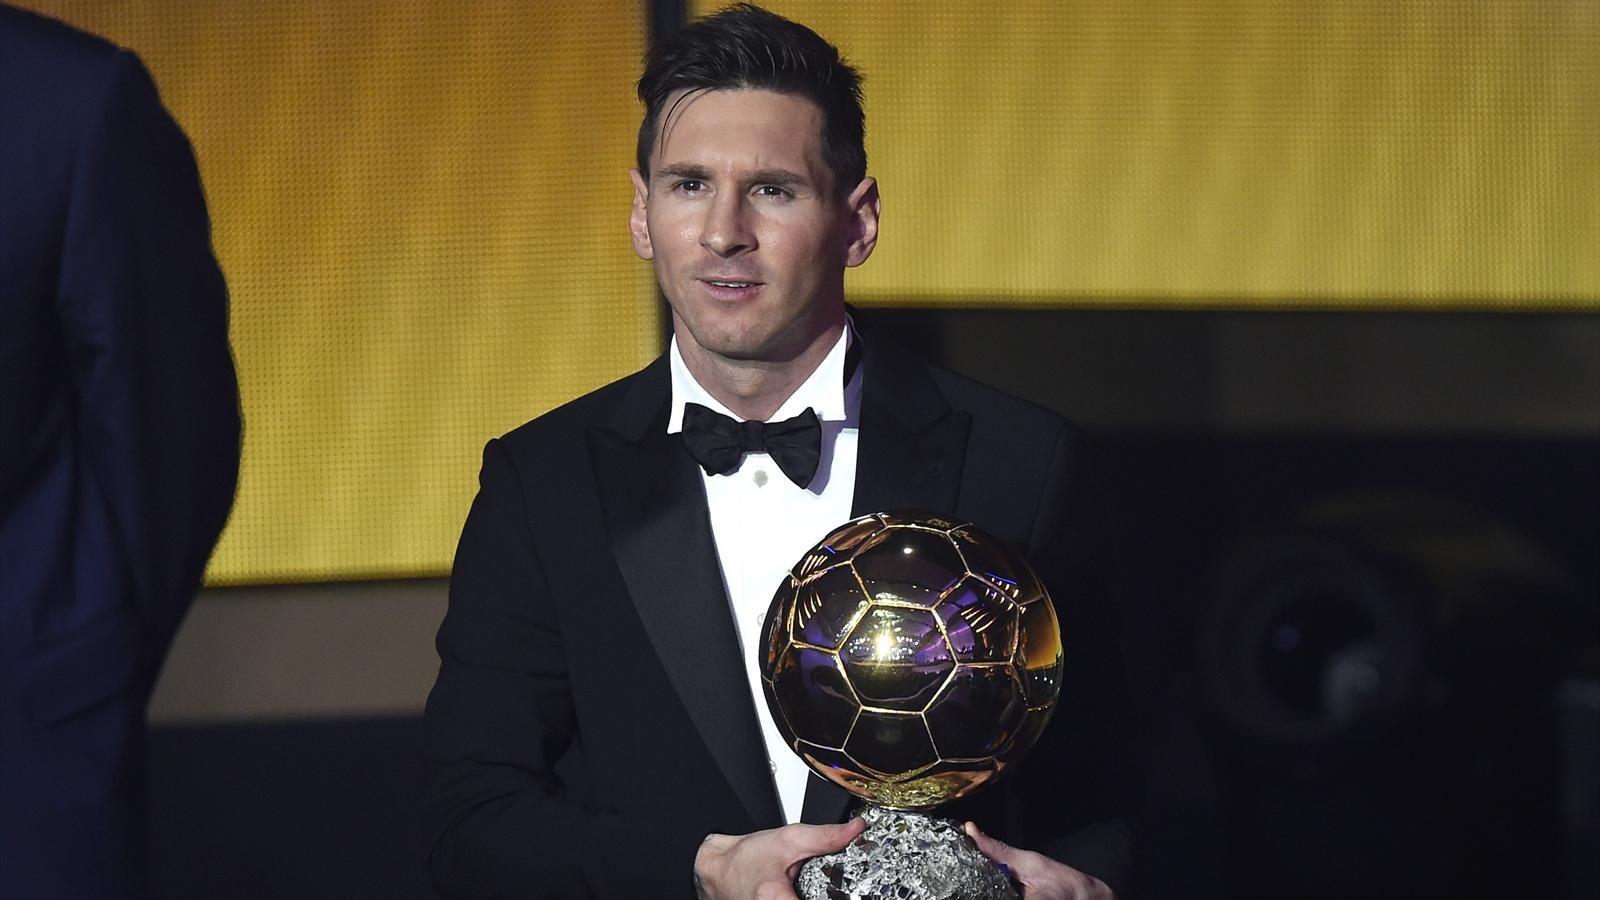 Lionel Messi sacré Ballon d’Or 2019 selon Mundo Deportivo